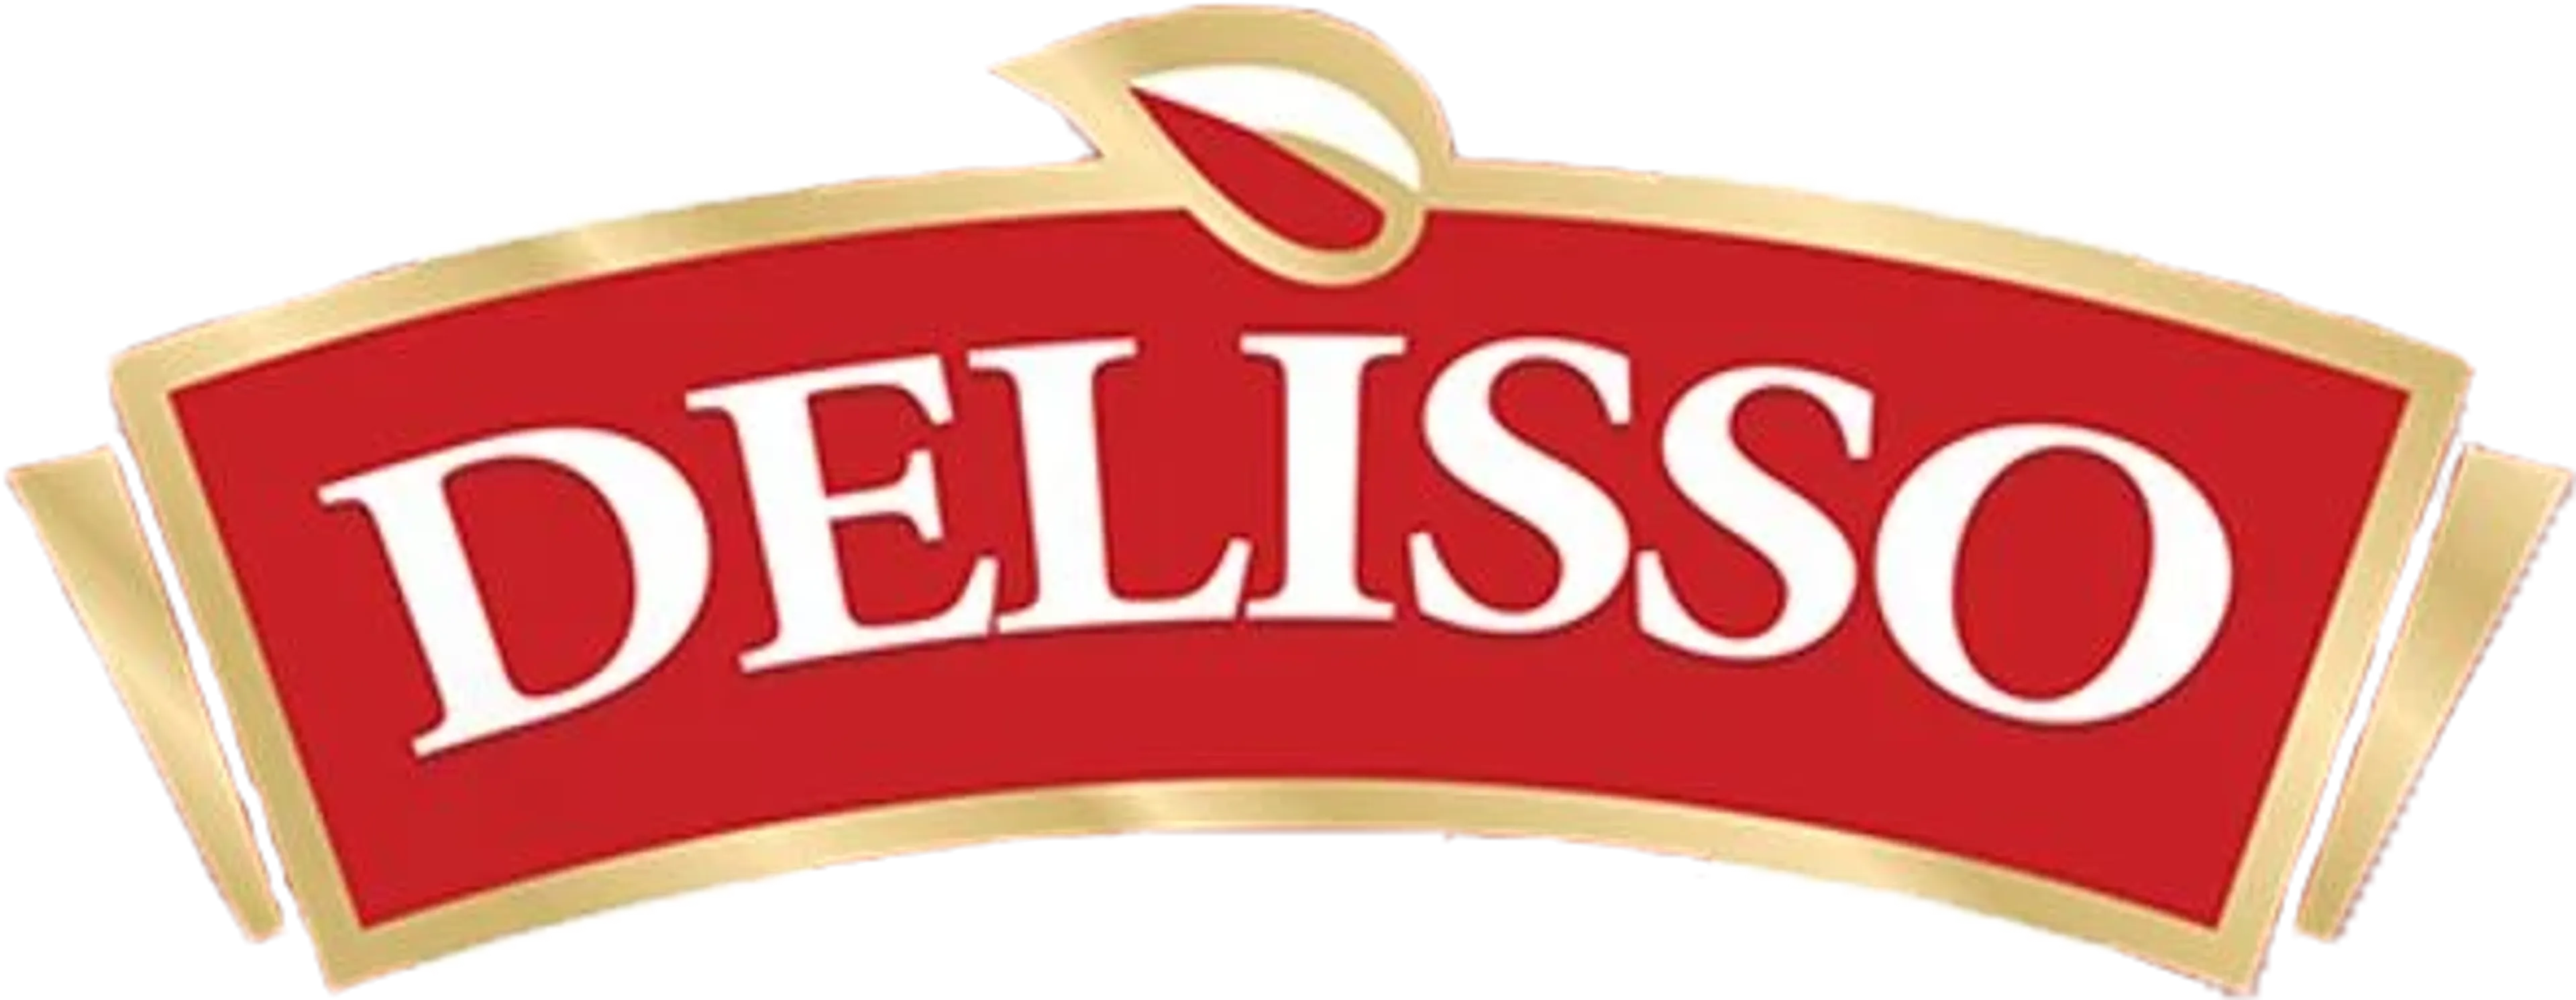 DELISSO  logo